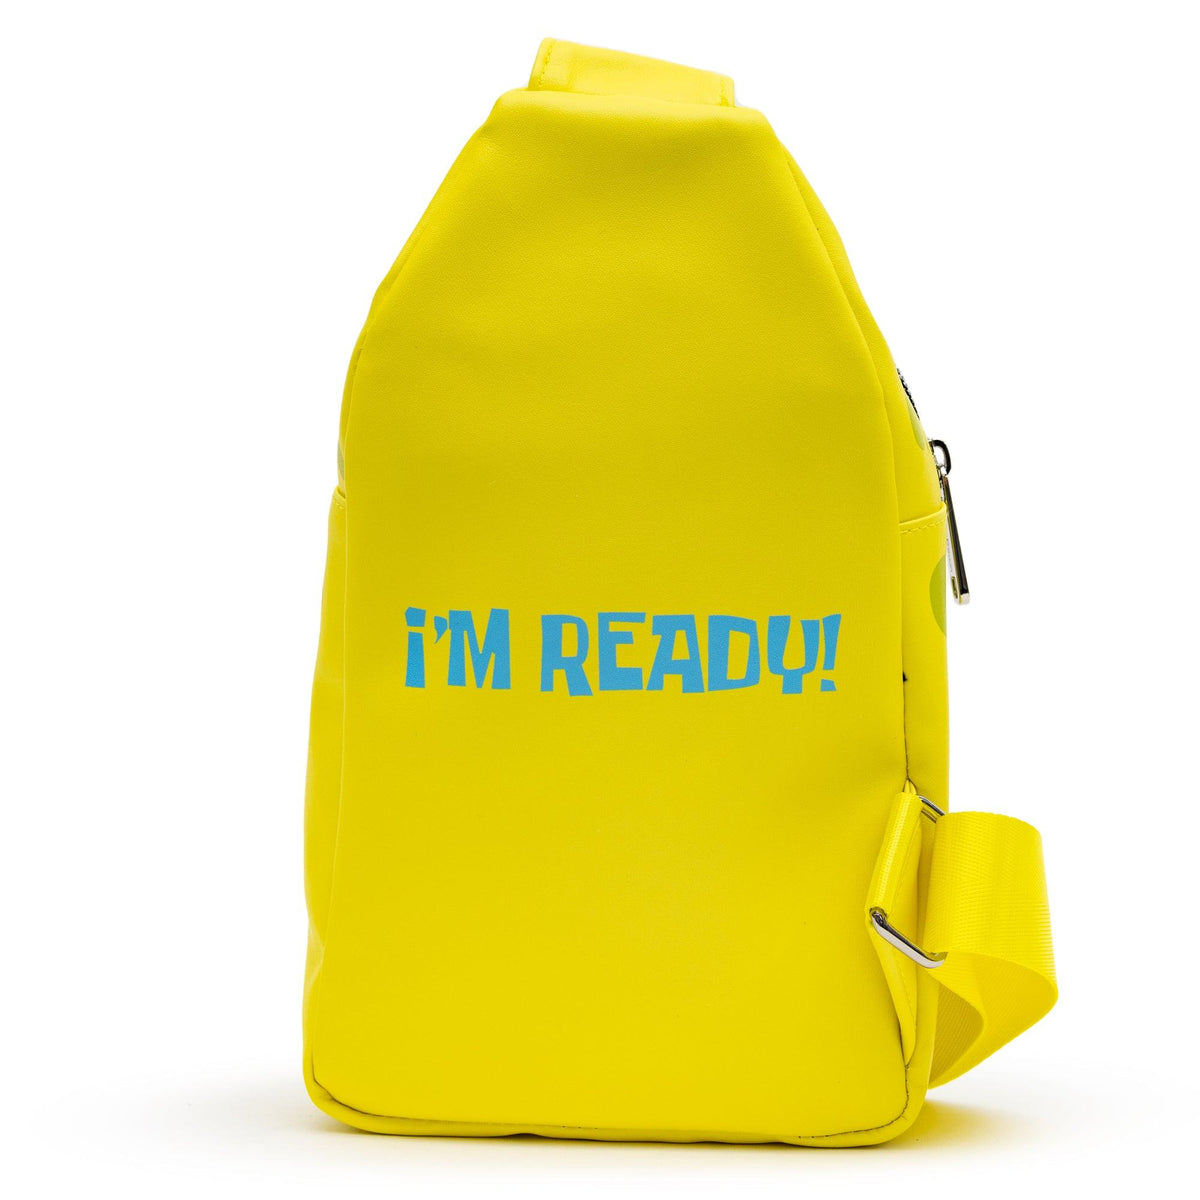 Nickelodeon SpongeBob SquarePants Sling Bag